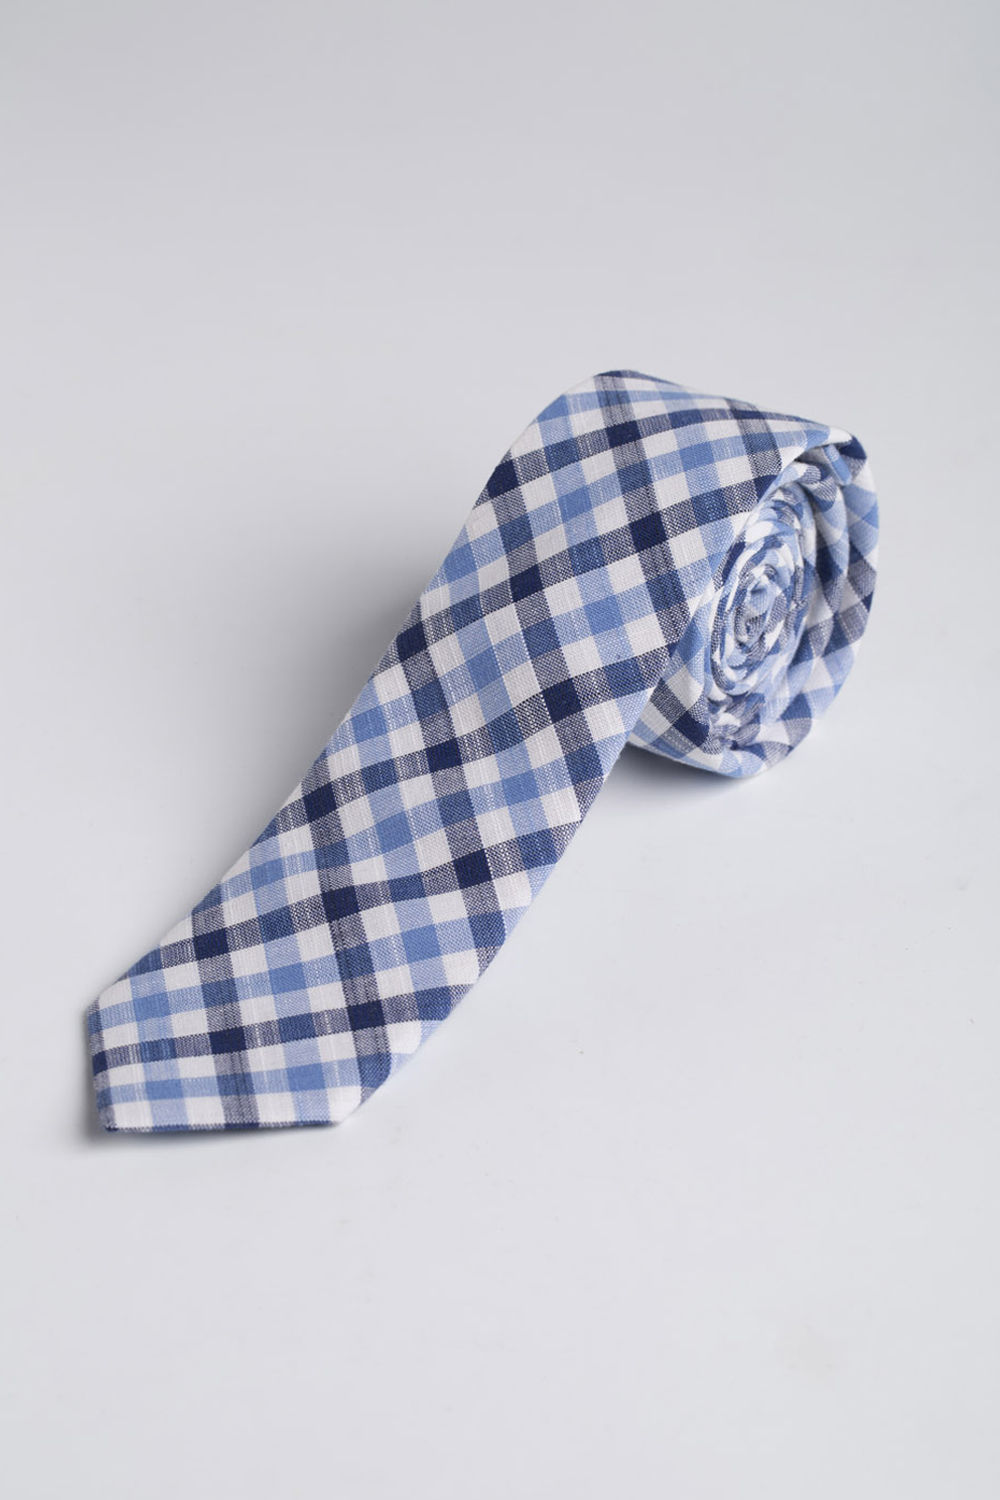 Tie | Slim Cotton Tie | Blue Tie